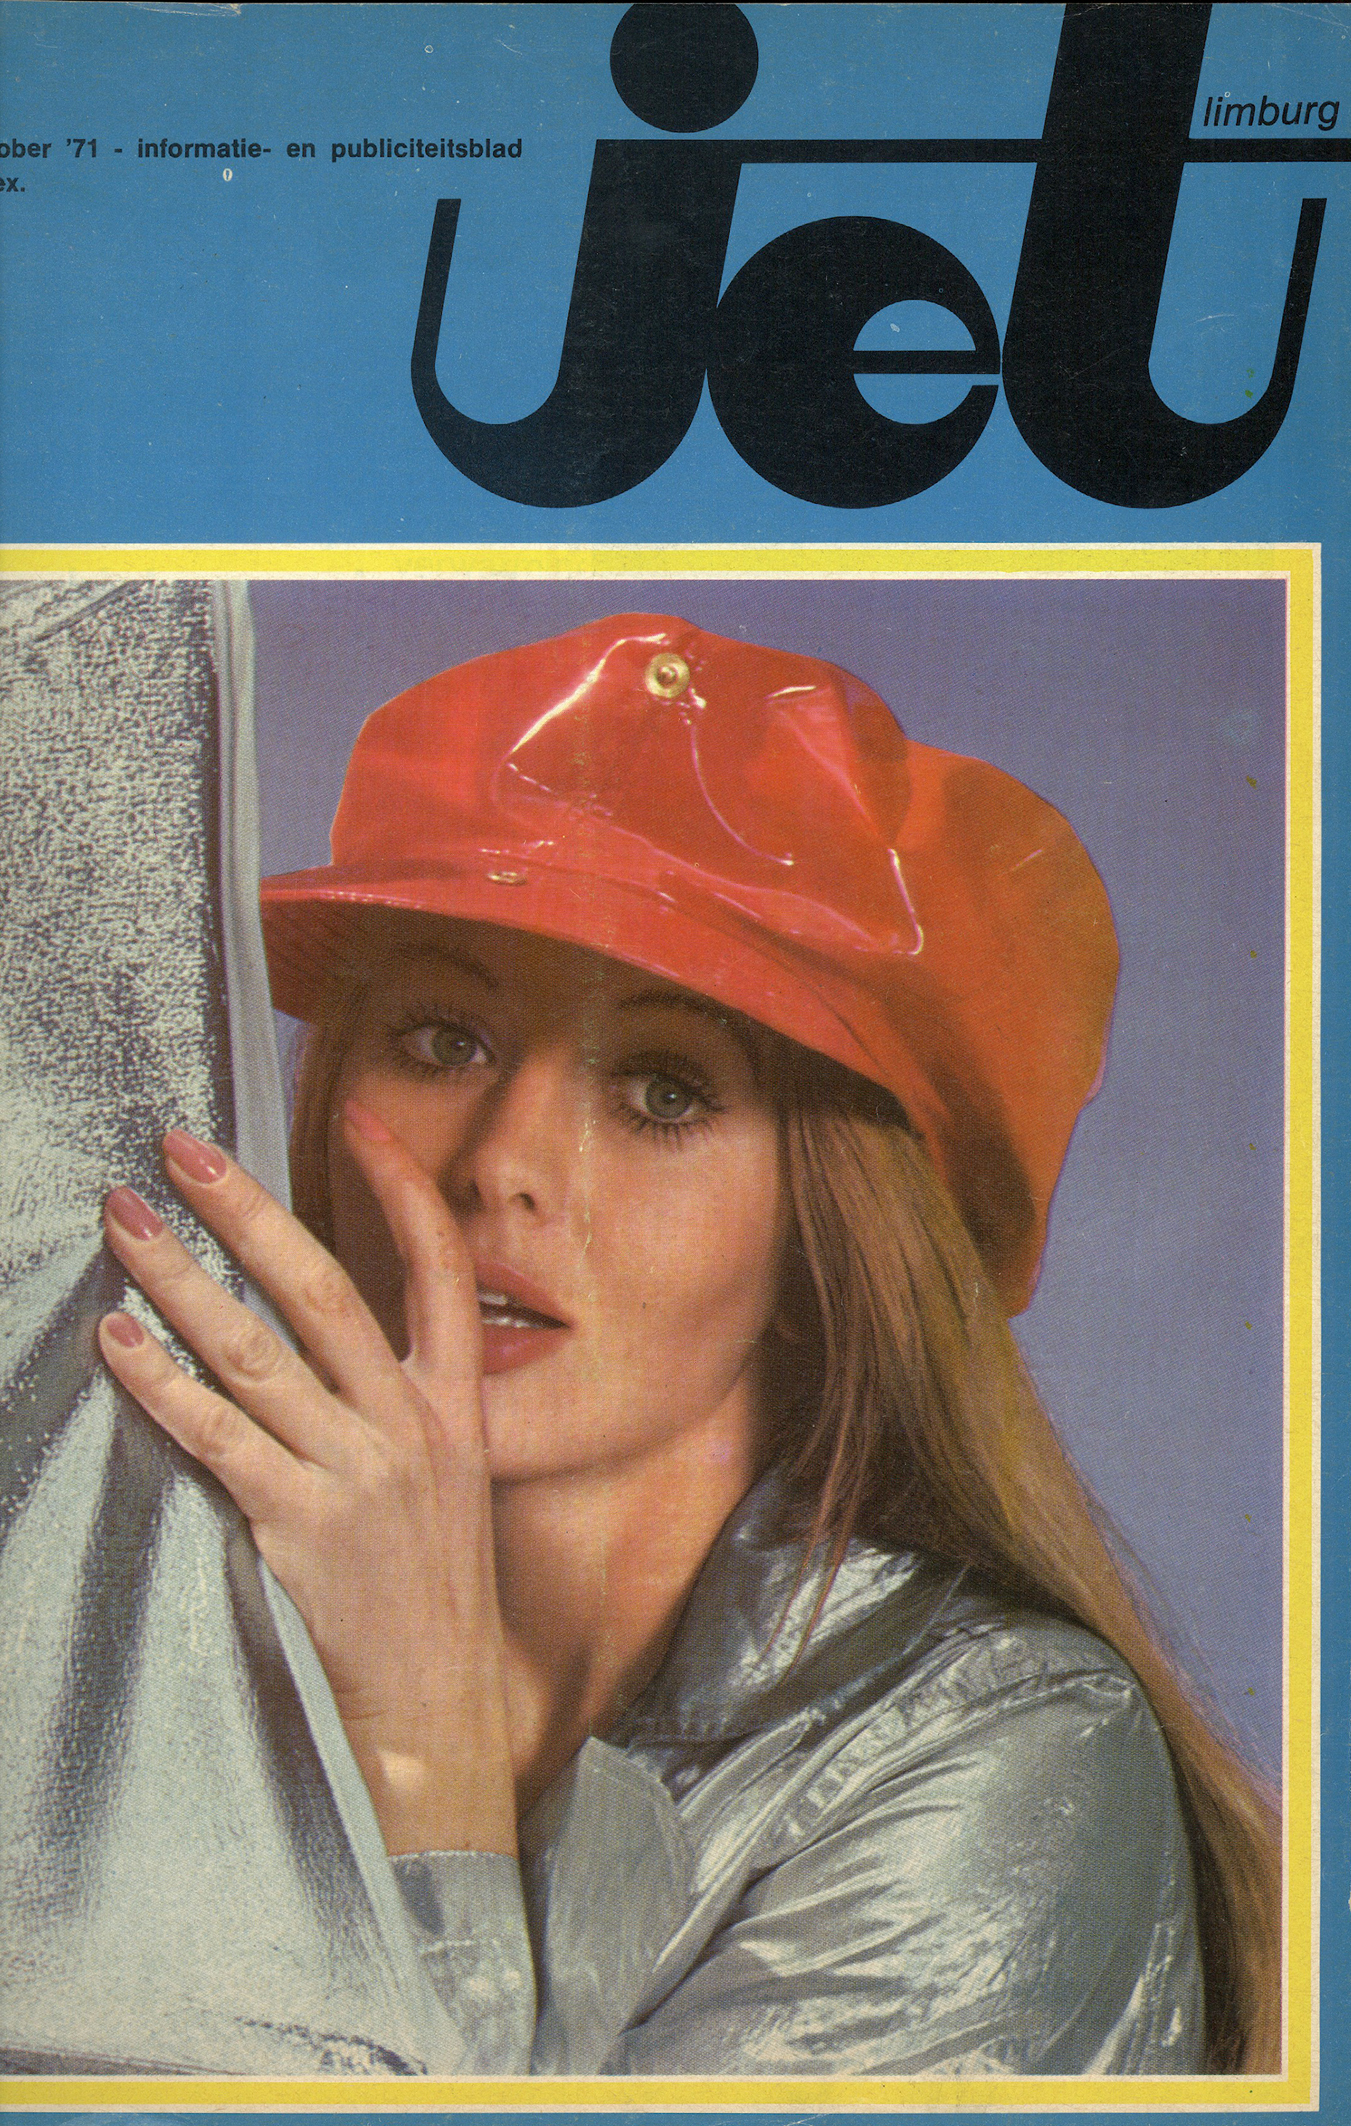 De eerste cover (oktober 1971)